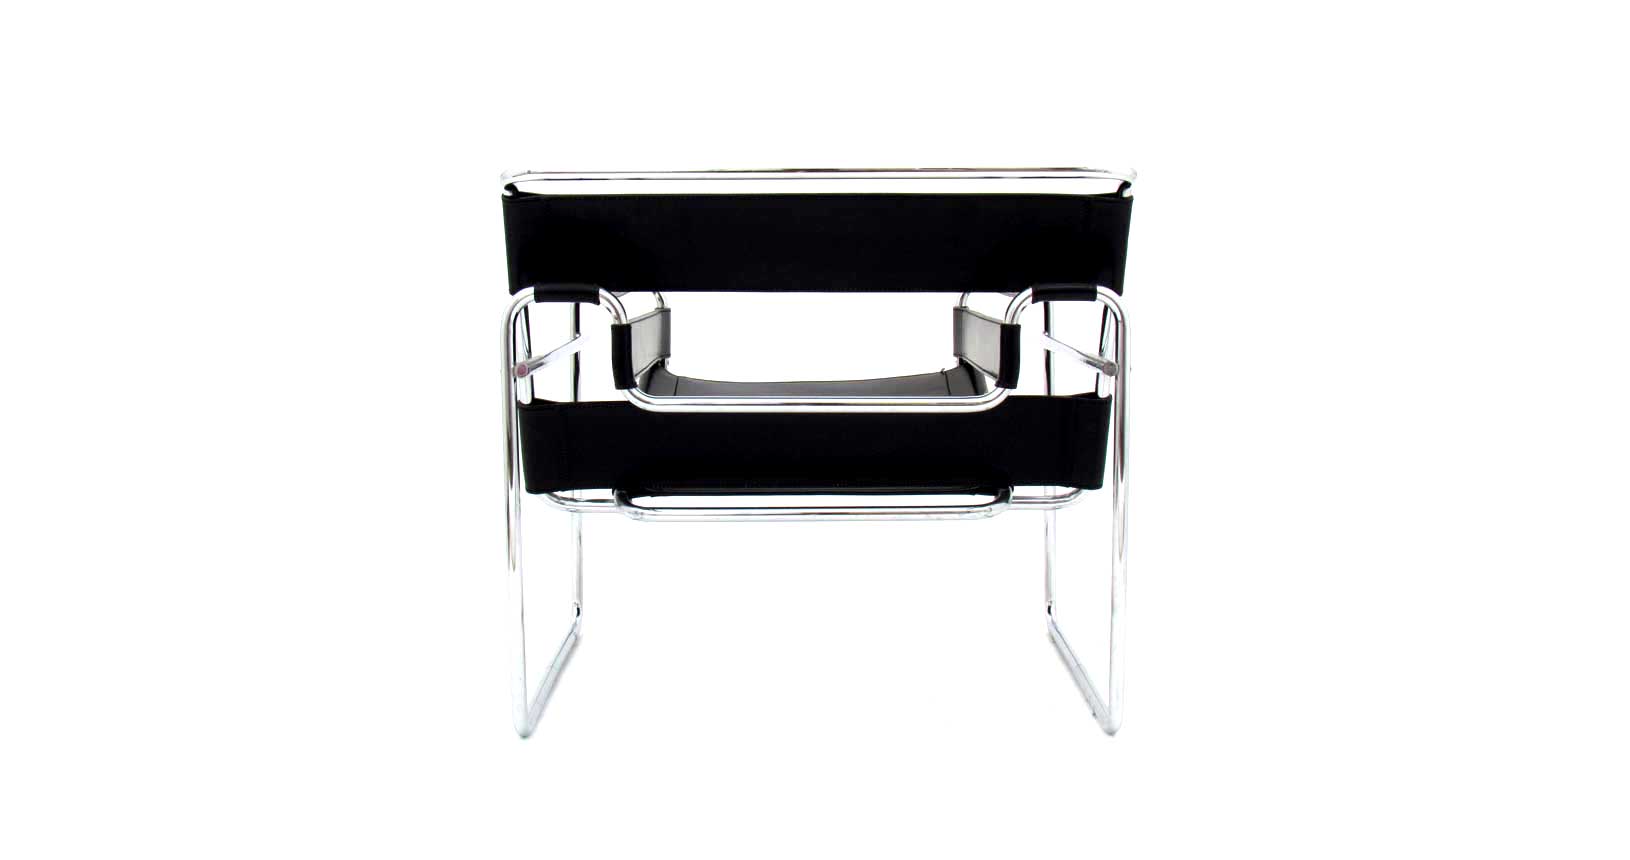 wassily chair sedia cuoio pelle cromato cassina vintage design knoll gavina furniture iconic design marcel breuer b3